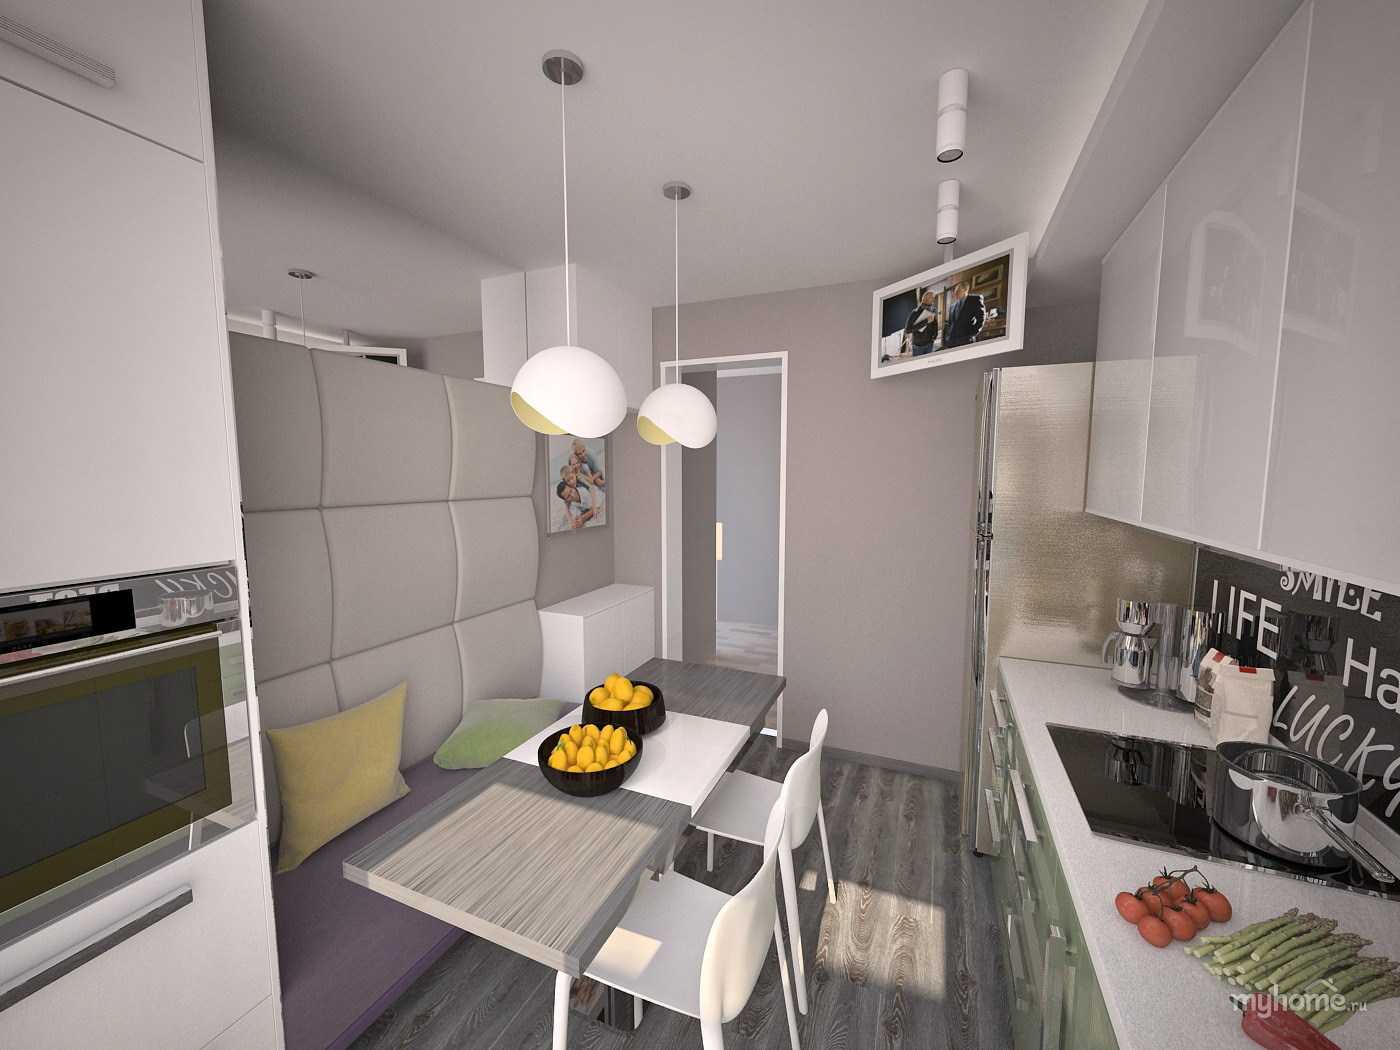 Кухня в панельном доме: планировка и дизайн маленькой кухни в девятиэтажном панельном доме (фото)